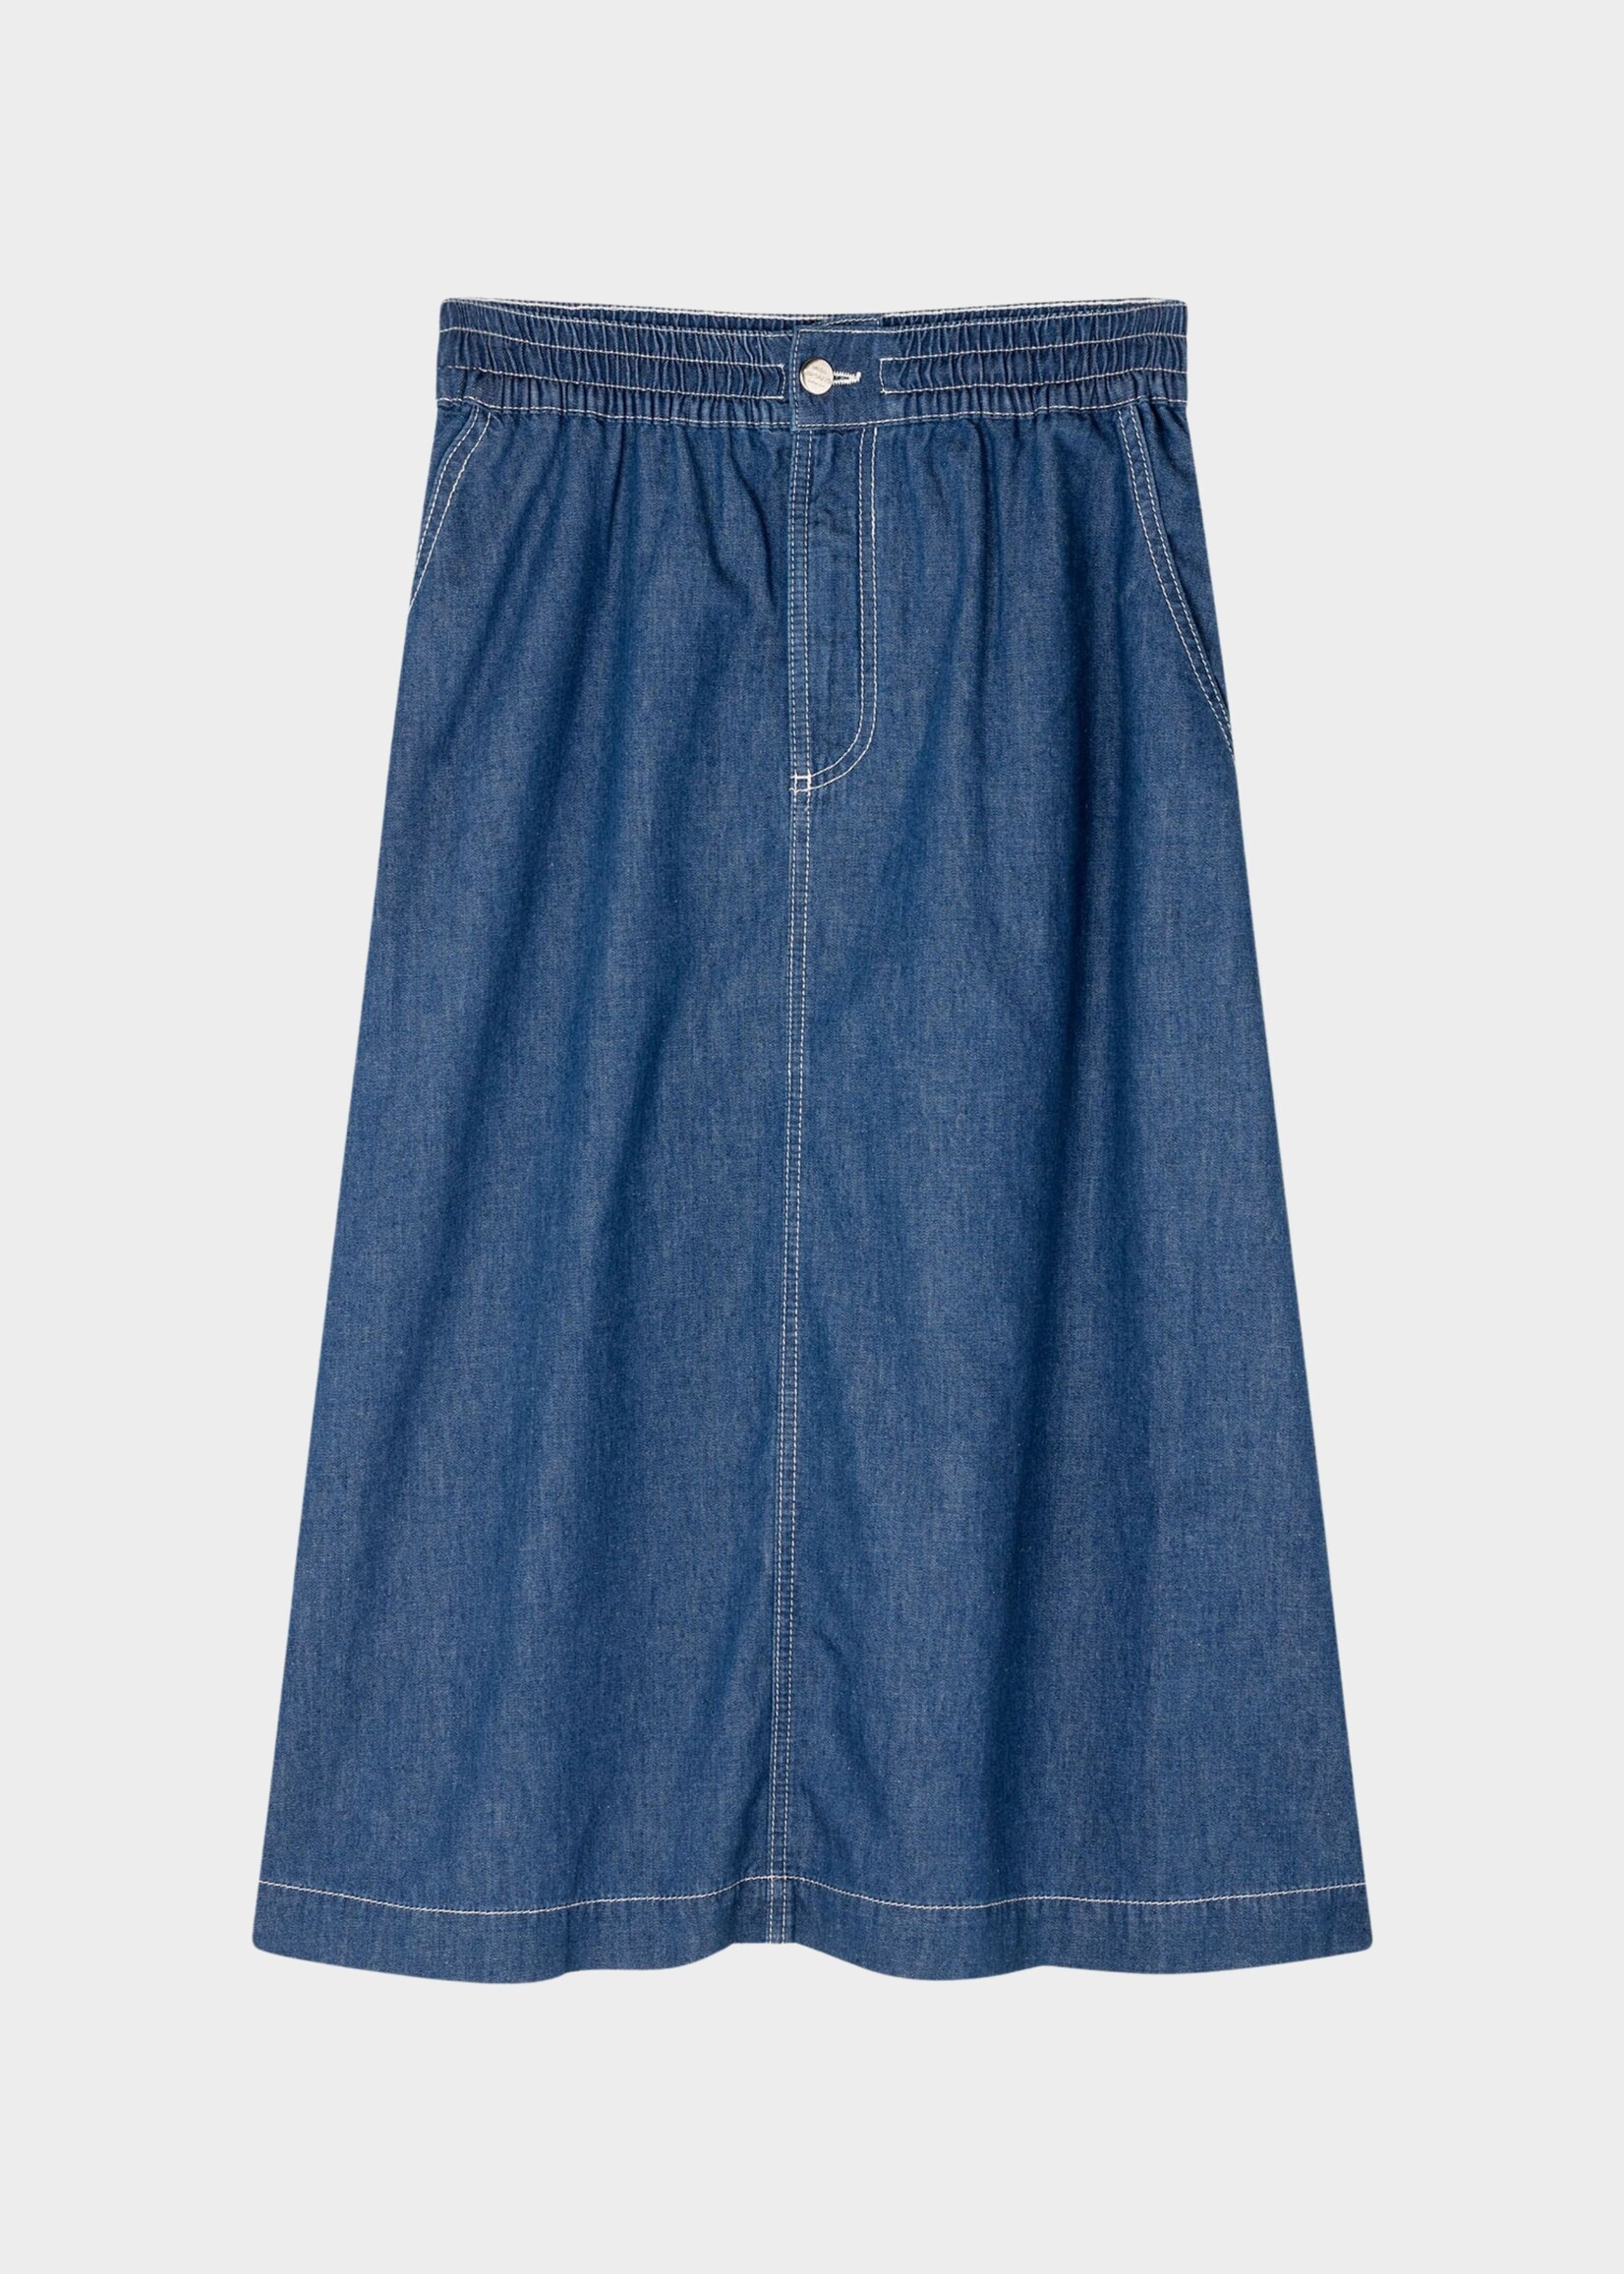 Mads Nørgaard Air Denim Luni Skirt, Mid Blue Denim